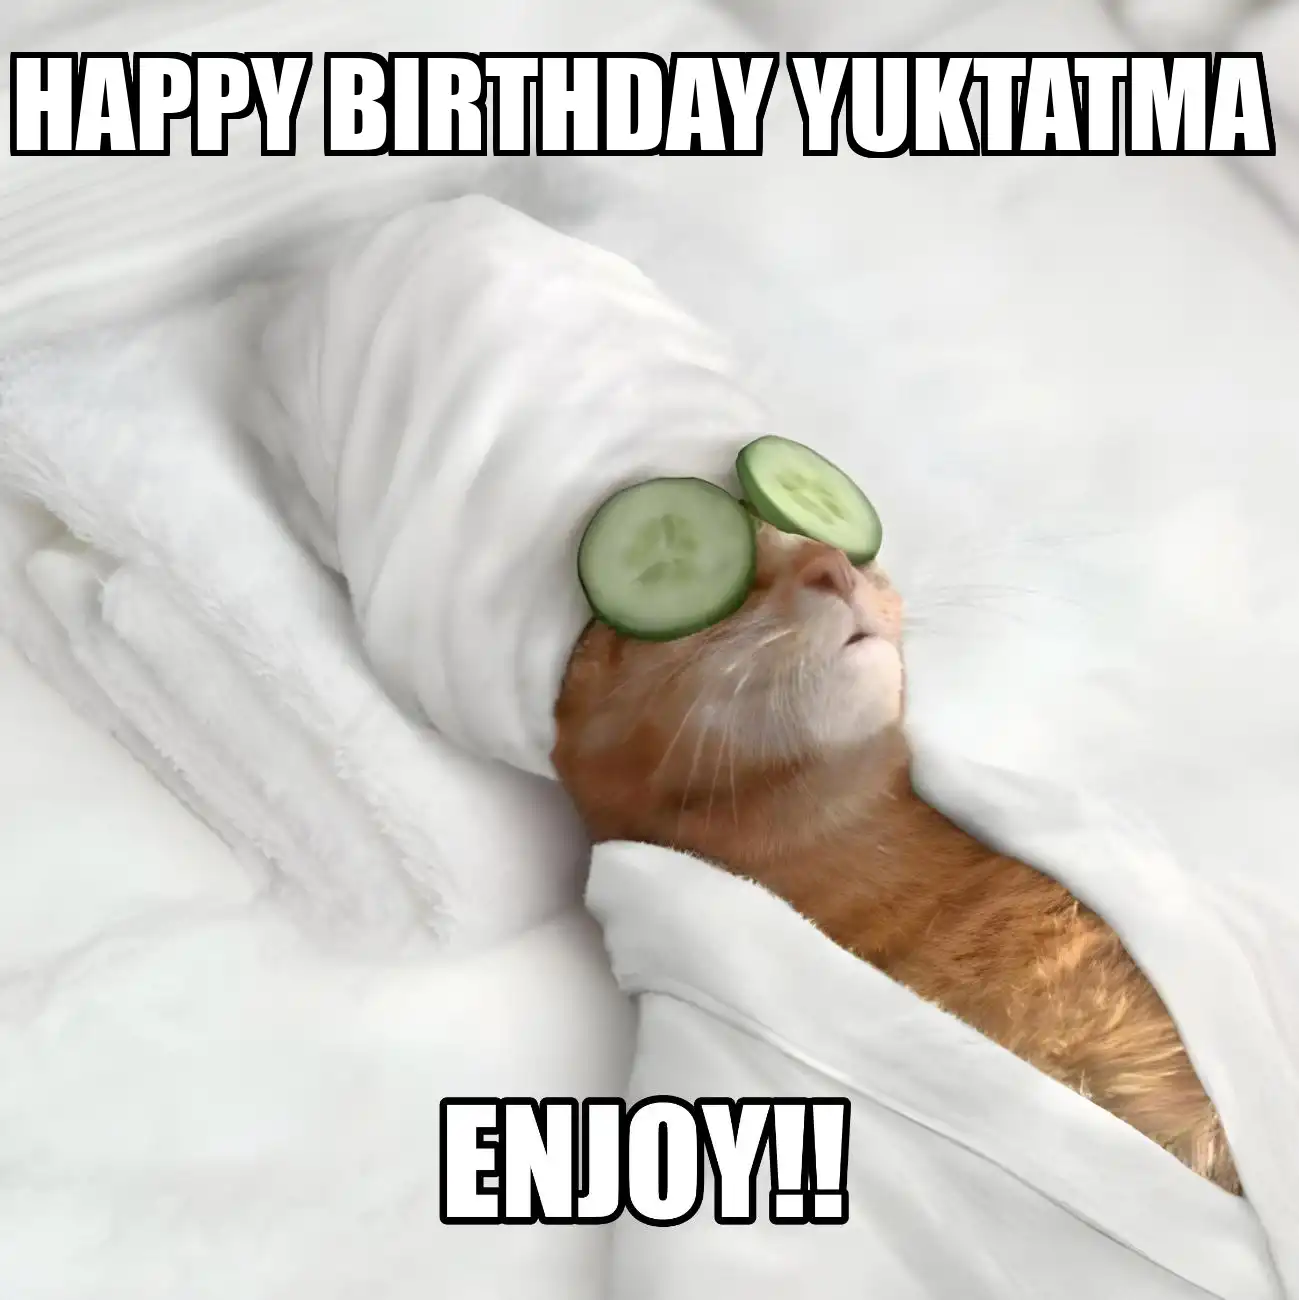 Happy Birthday Yuktatma Enjoy Cat Meme